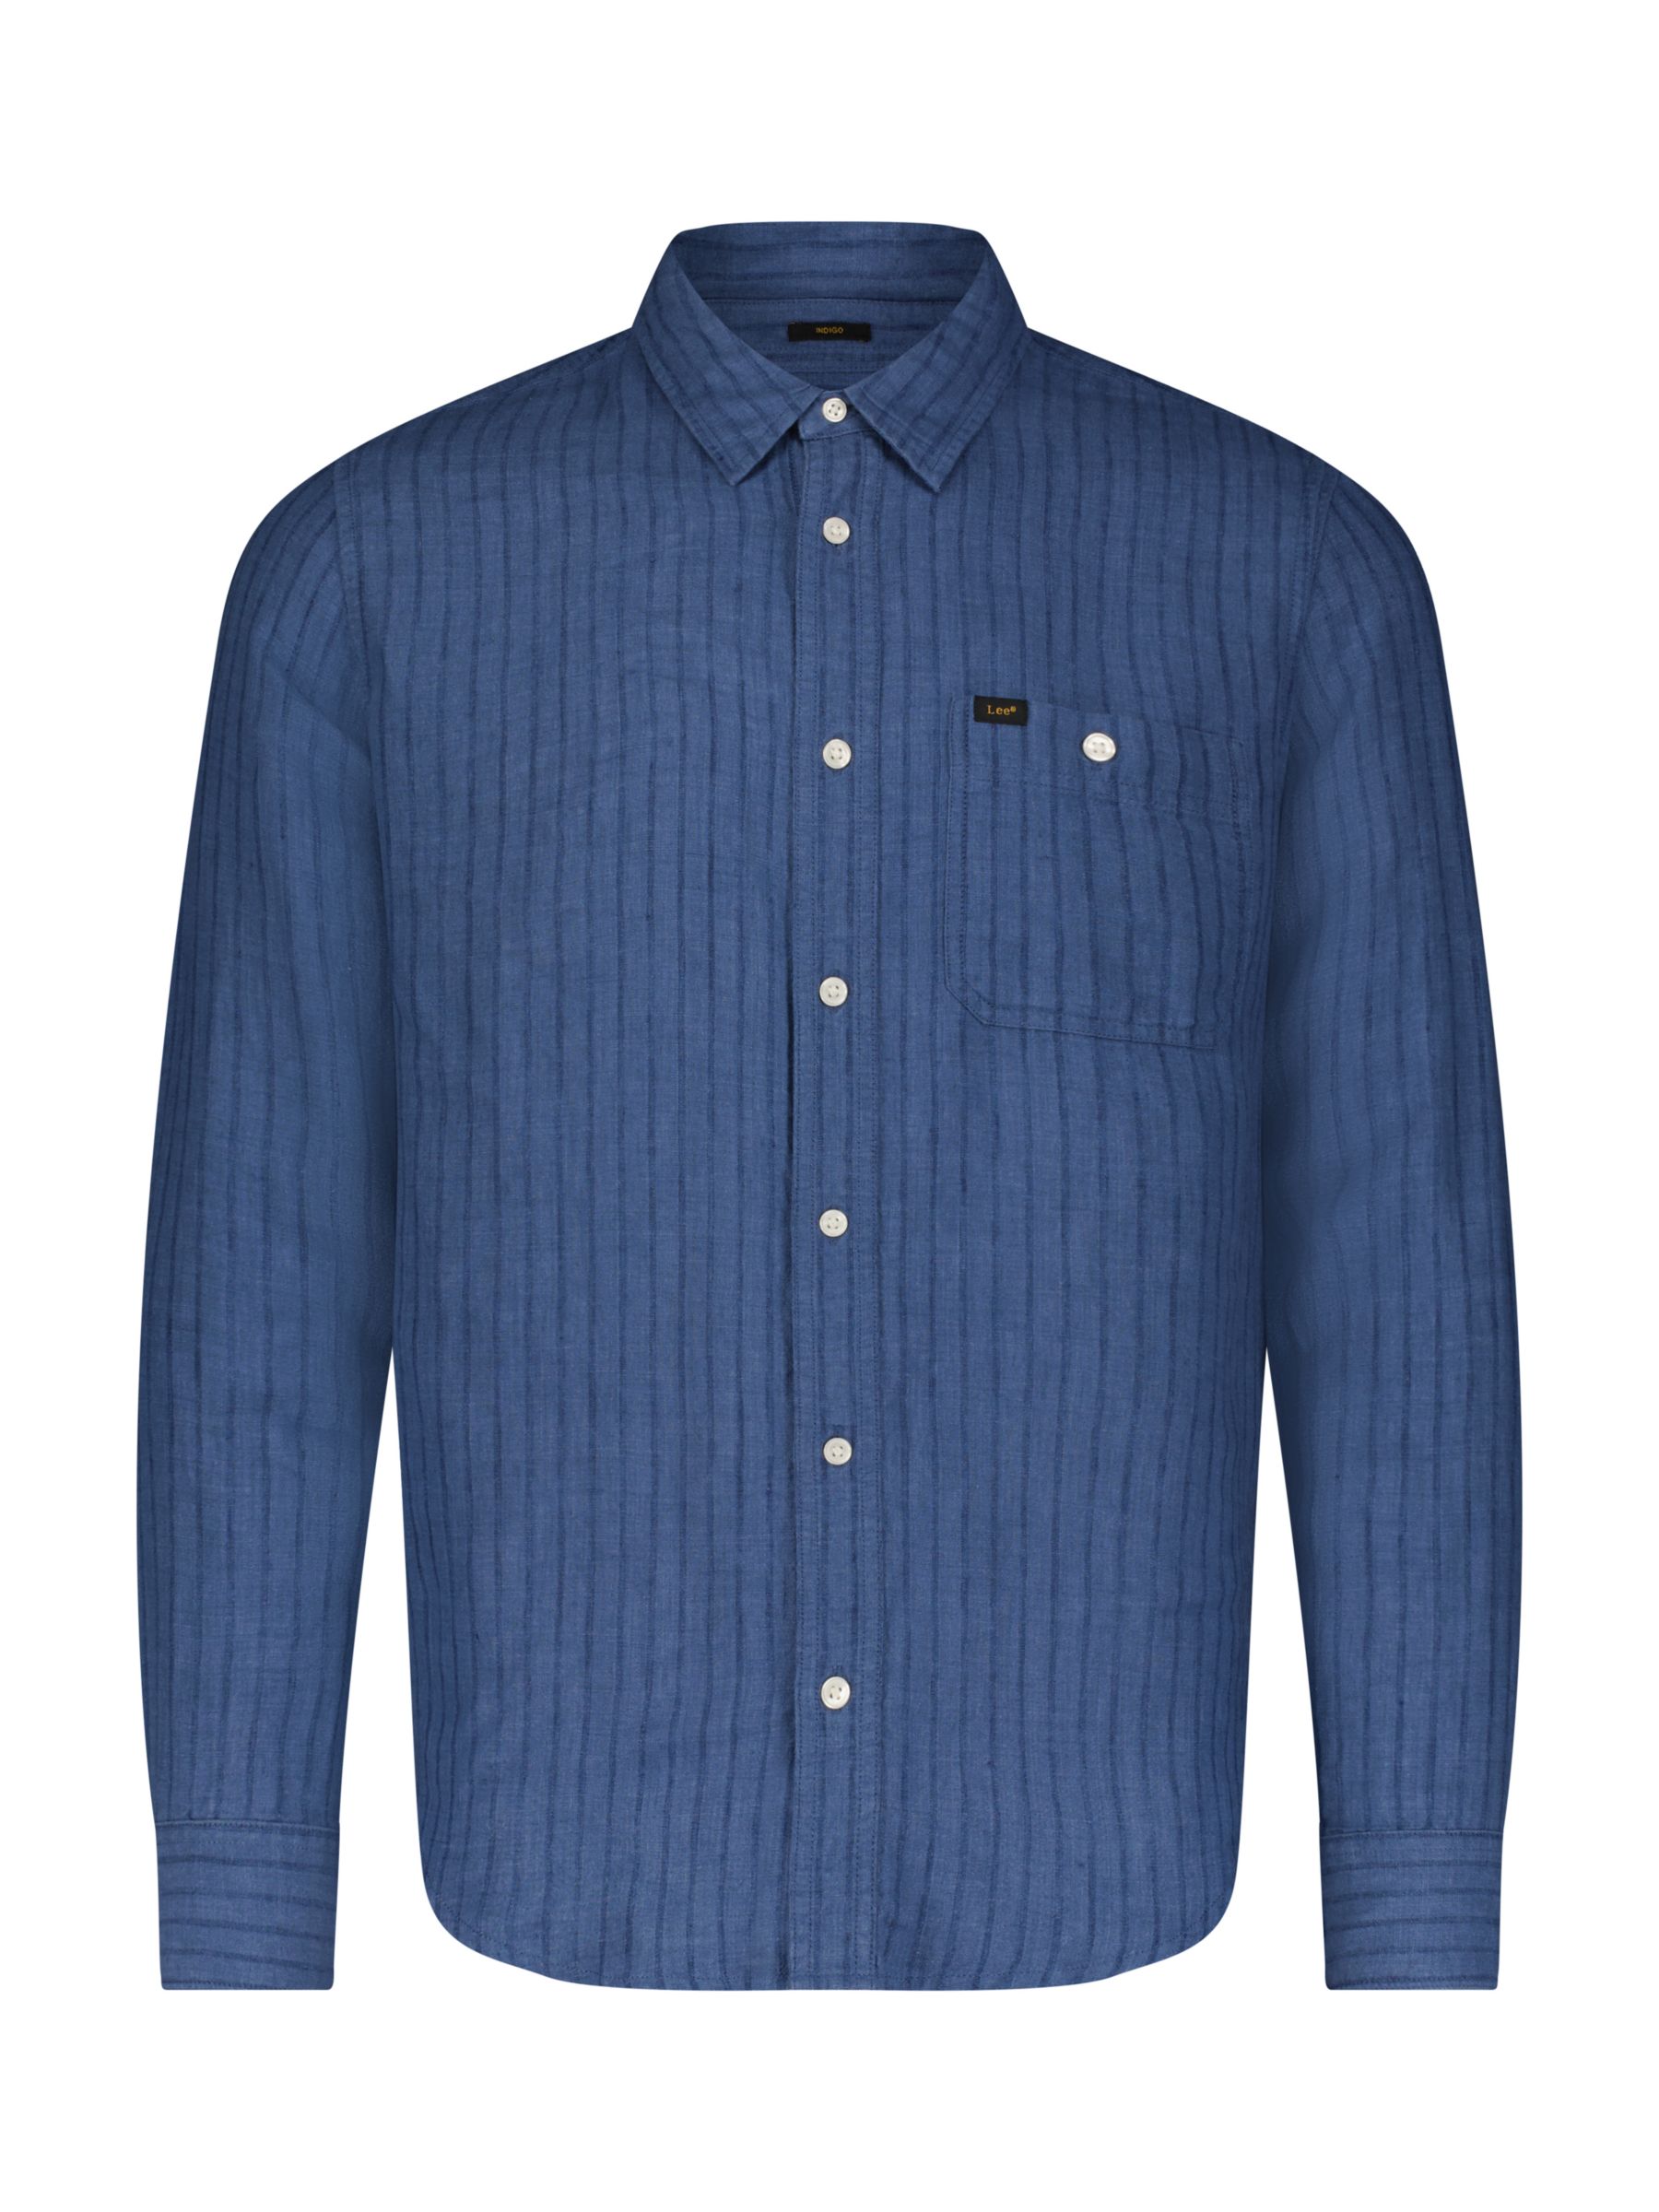 Buy Lee Leesure Long Sleeve Shirt, Blue Online at johnlewis.com